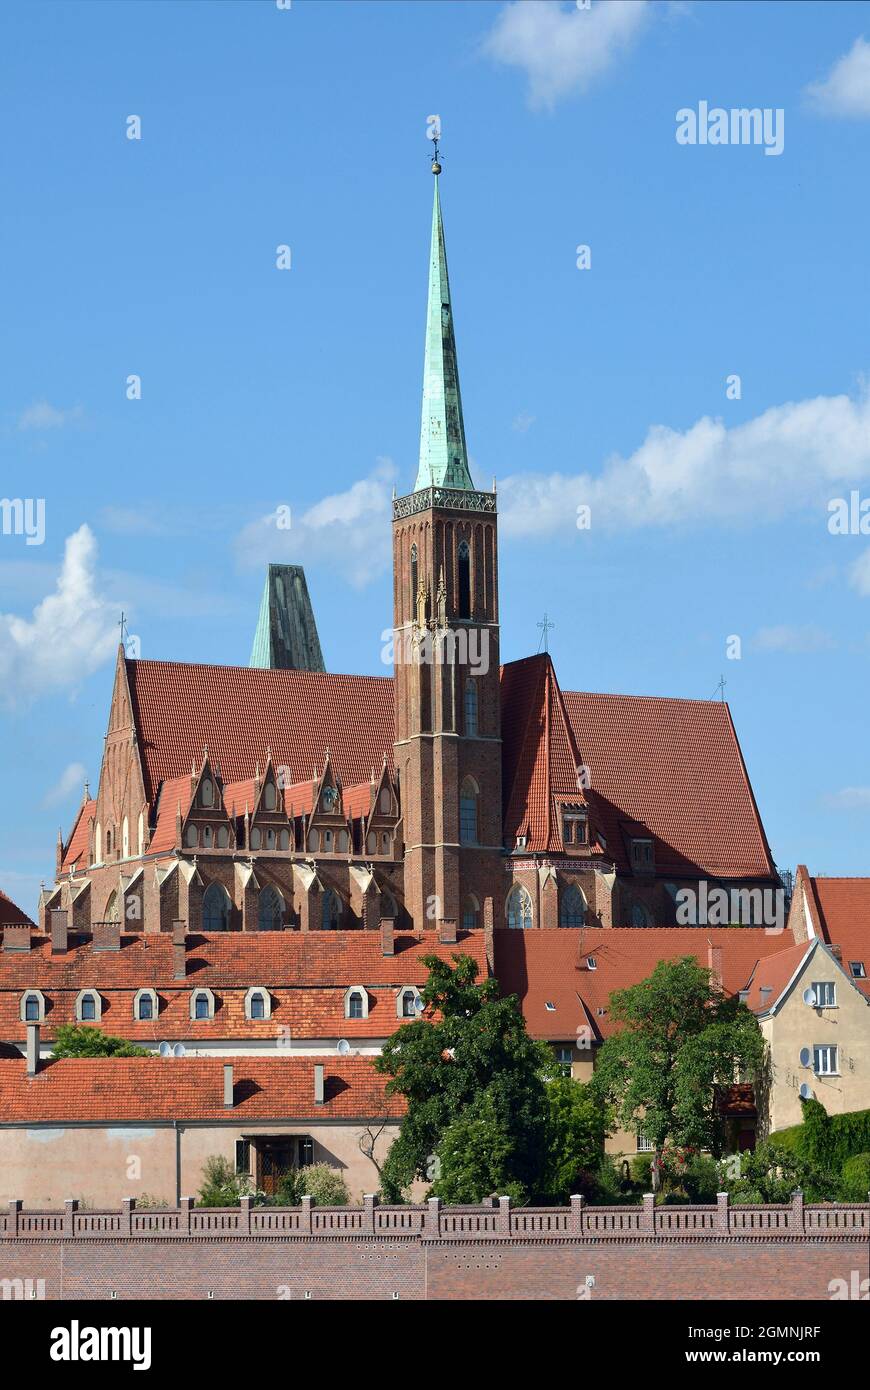 Vue sur la rivière Oder jusqu'à l'île de la Cathédrale avec l'église Sainte Vierge Marie de Wroclaw - Pologne . Banque D'Images